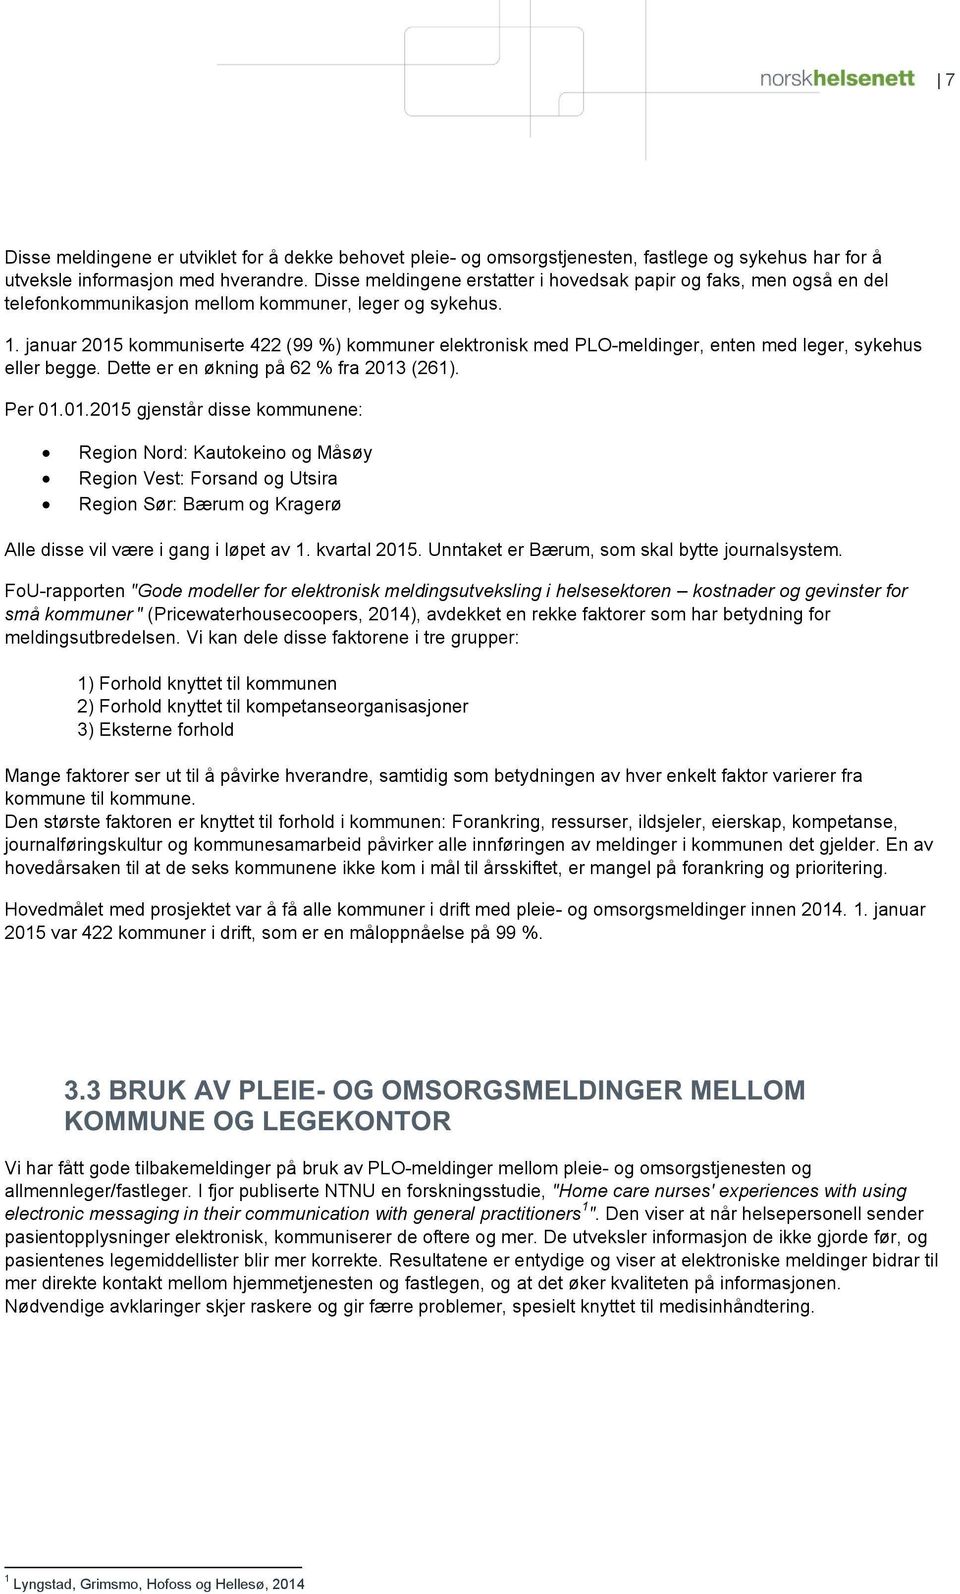 januar 2015 kmmuniserte 422 (99 %) kmmuner elektrnisk med PLO - meldinger, enten med l eger, sykehus eller begge. Dette er en økning på 62 % fra 2013 (261). Per 01.01.2015 gjenstår disse kmmunene: Regin Nrd: Kautkein g Måsøy Regin Vest: Frsand g Utsira Regin Sør: Bærum g Kragerø A lle disse vil være i gang i løpet av 1.